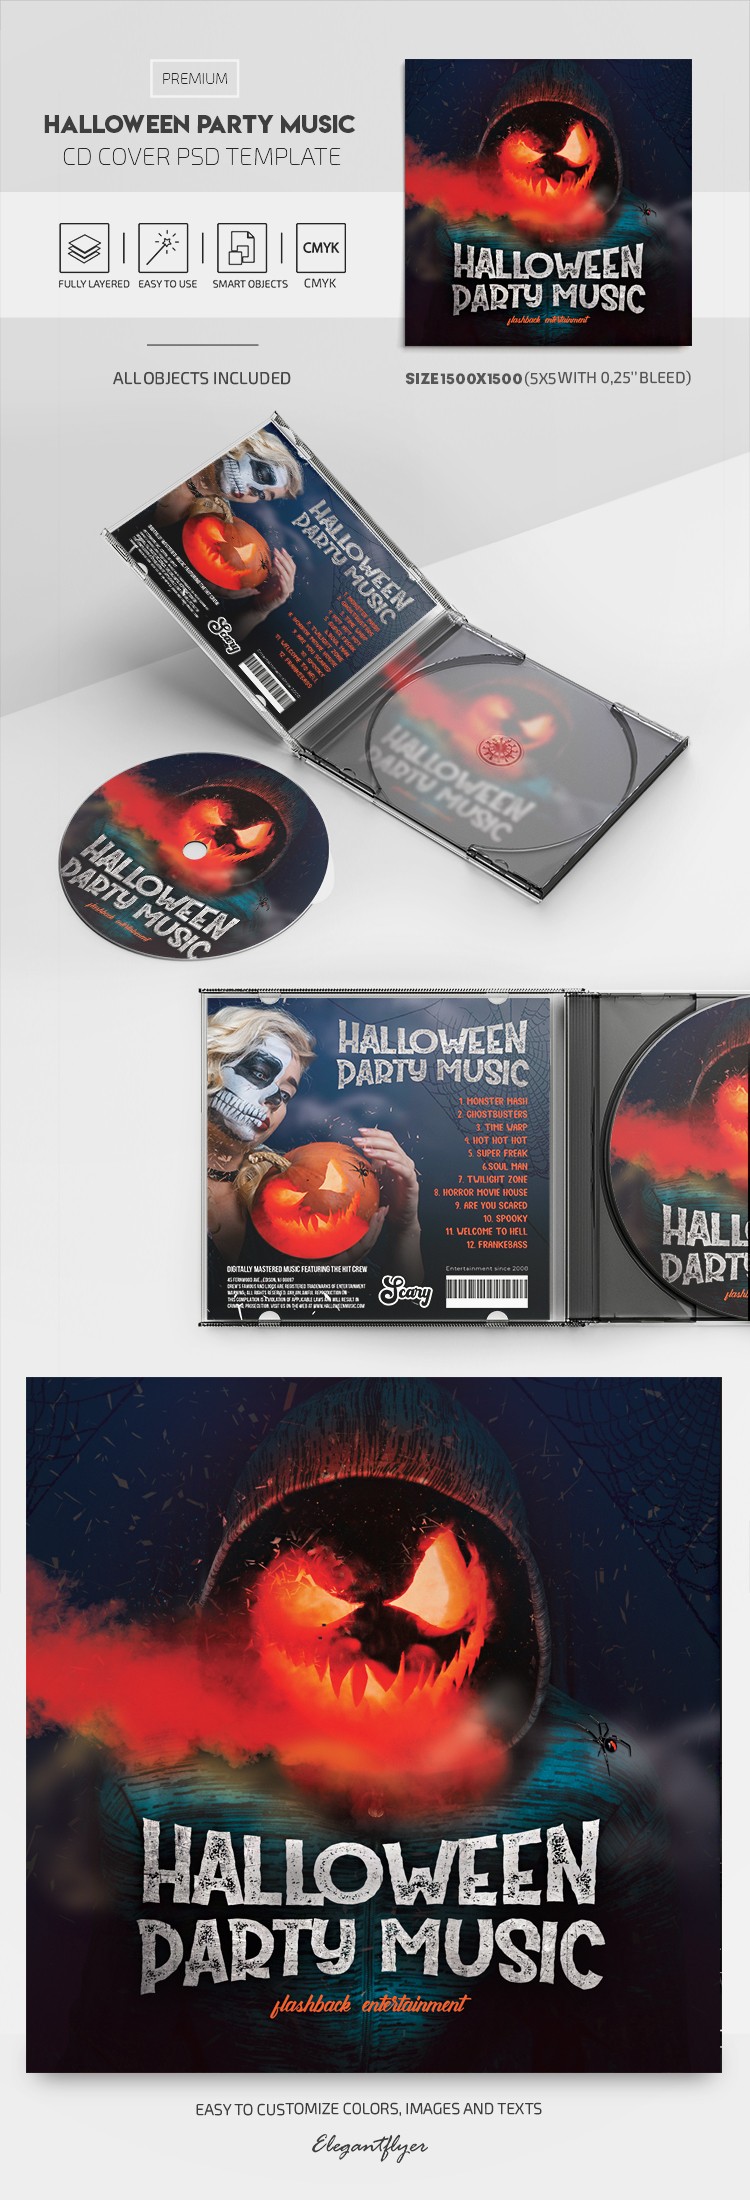 Portada del CD de música para la fiesta de Halloween by ElegantFlyer